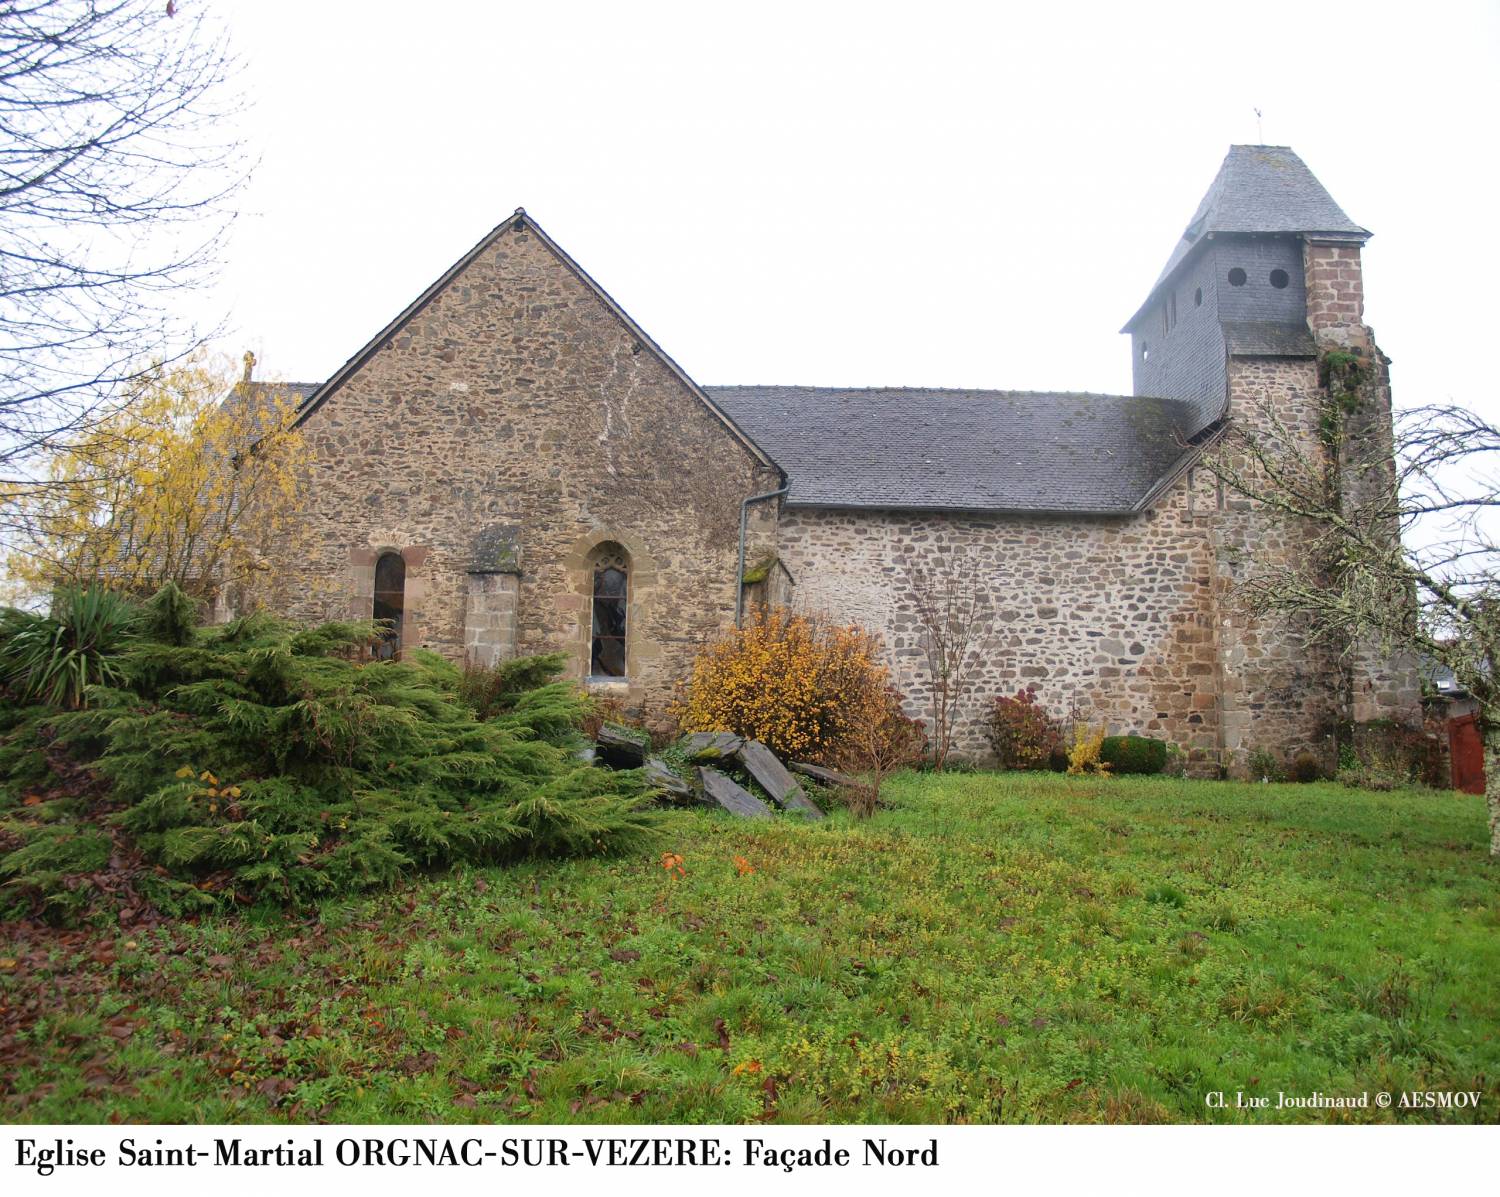 Orgnac-sur-Vézère (19) Eglise Saint-Martial